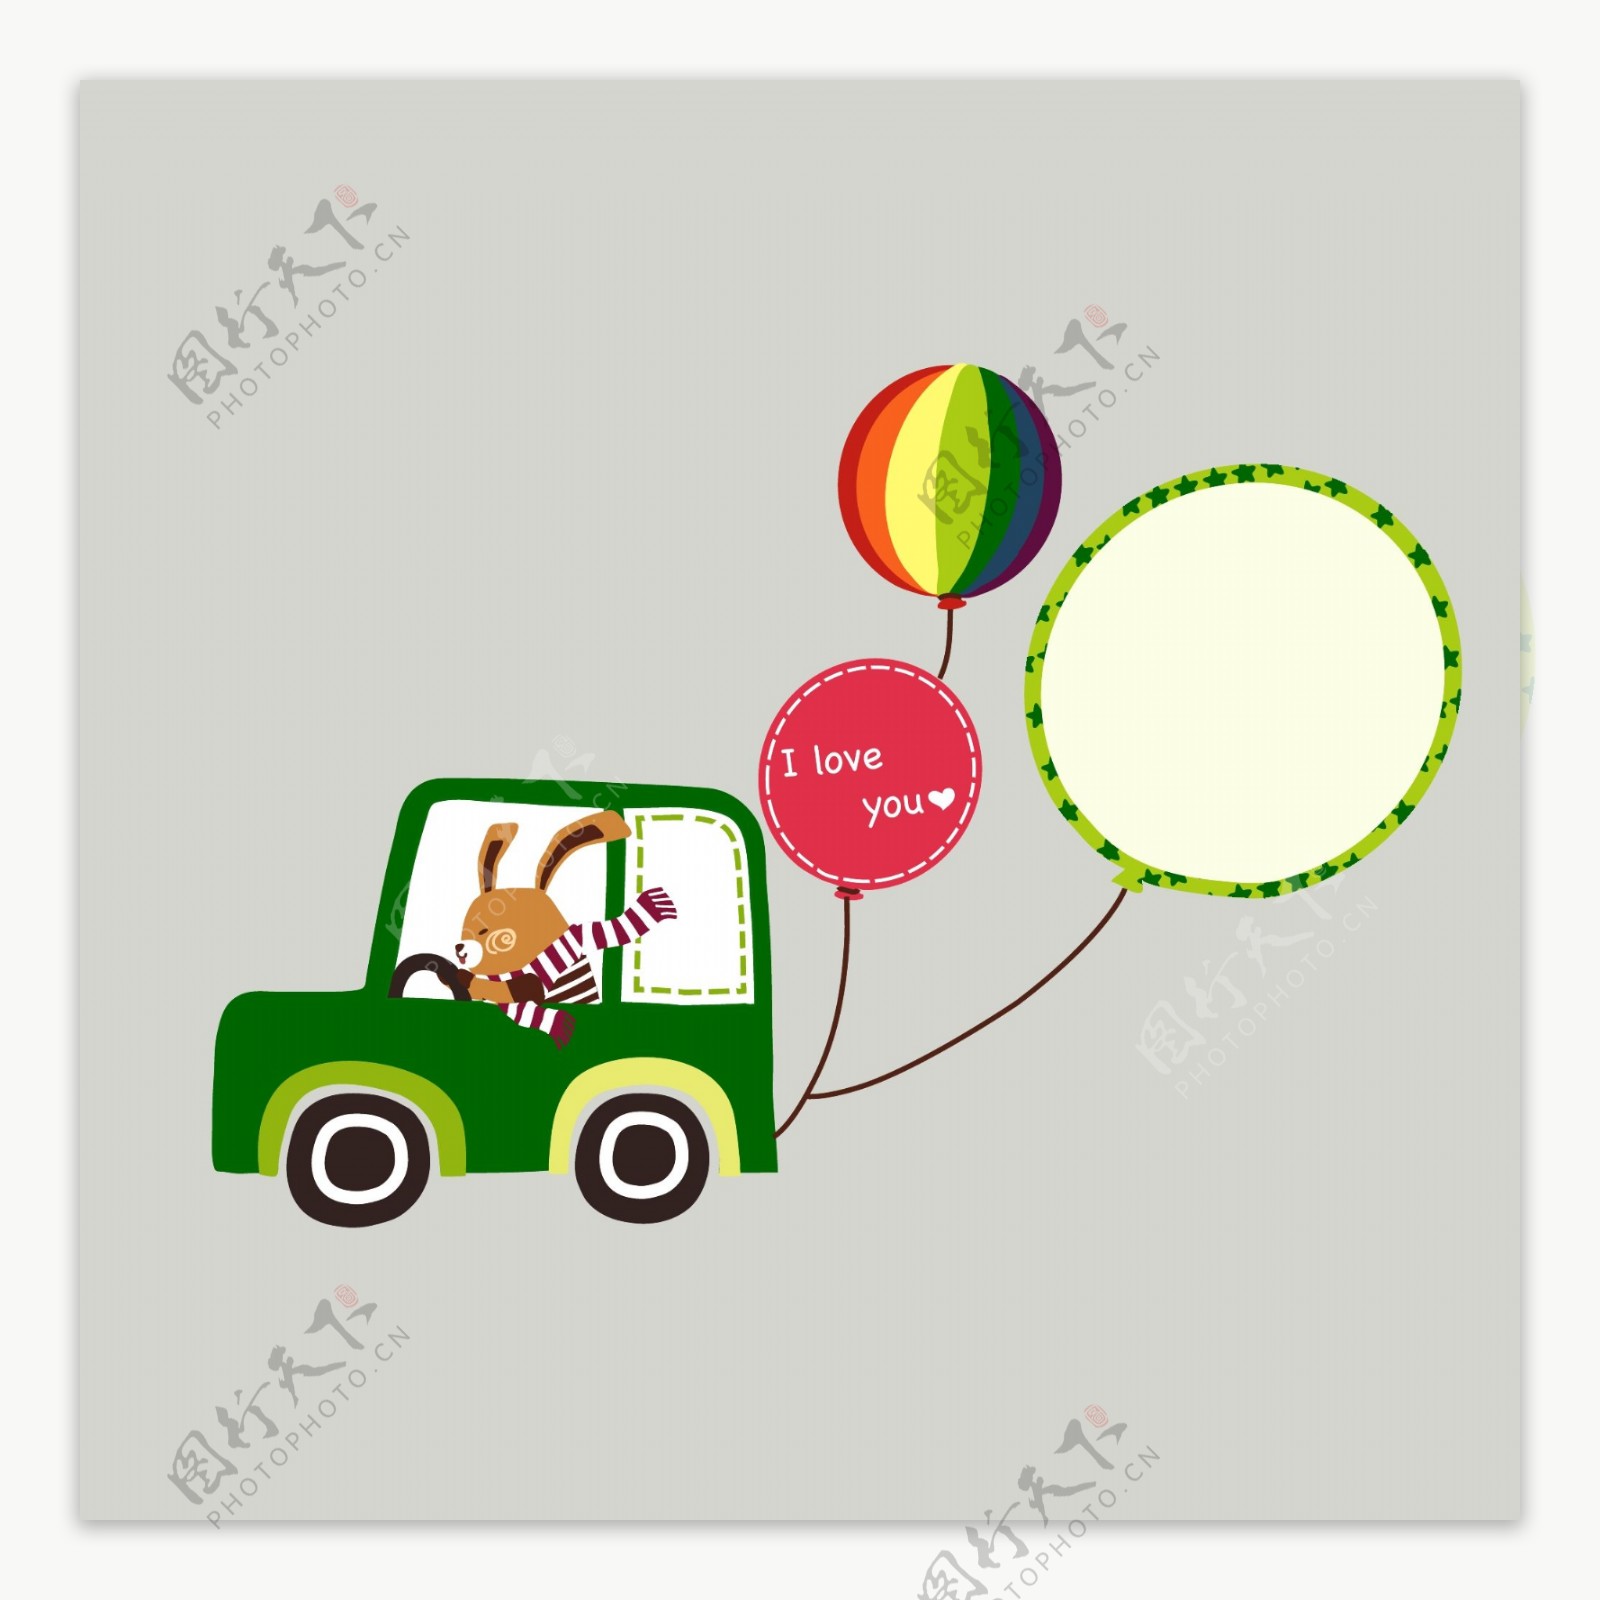 印花矢量图可爱卡通生活元素汽车气球免费素材